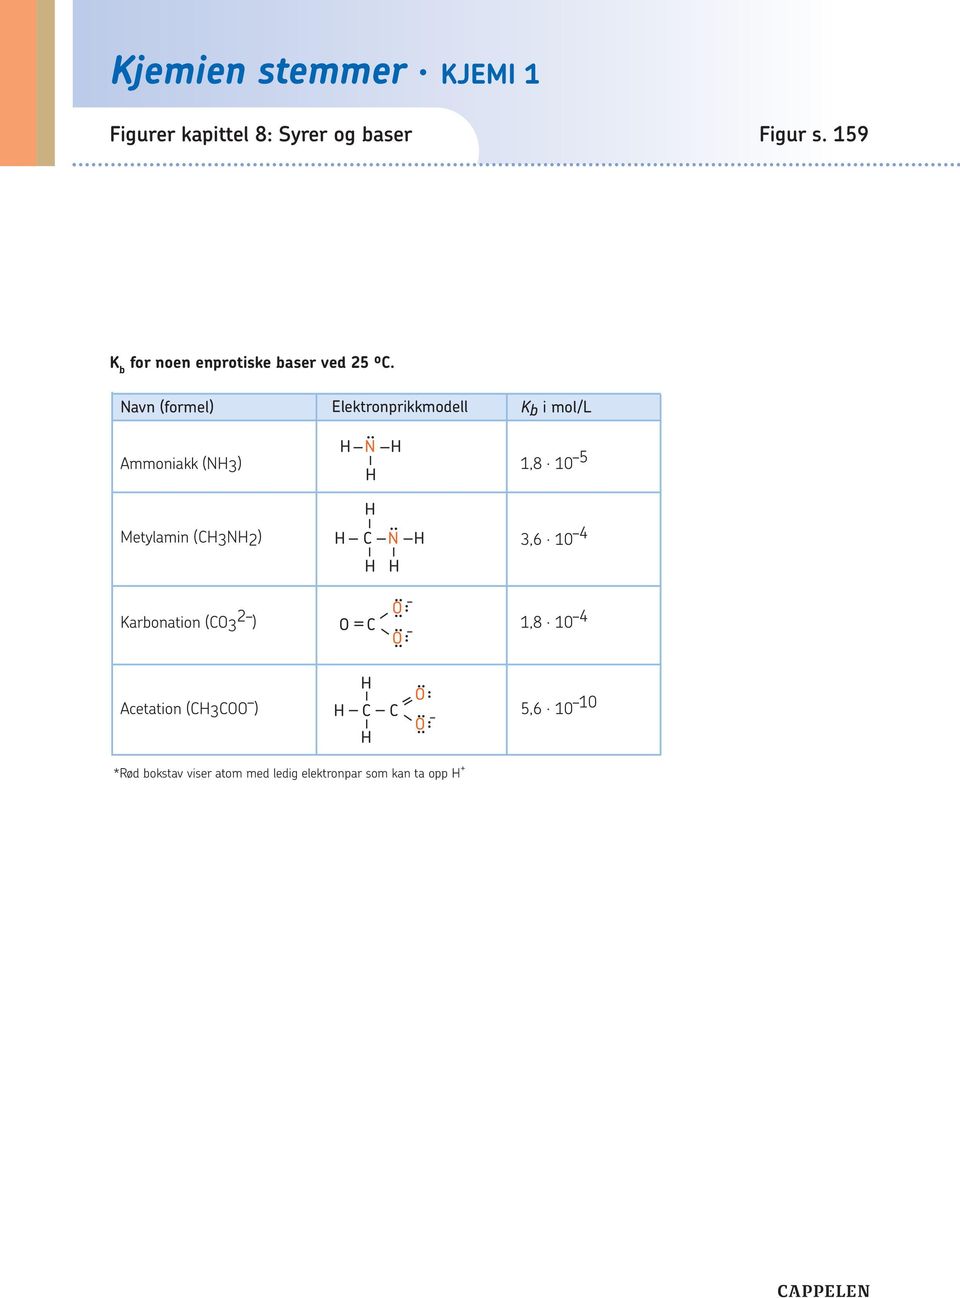 Metylamin (CH3NH2) H H C N H 3,6 0 4 H H Karbonation (CO3 2 O ) O C,8 0 4 O